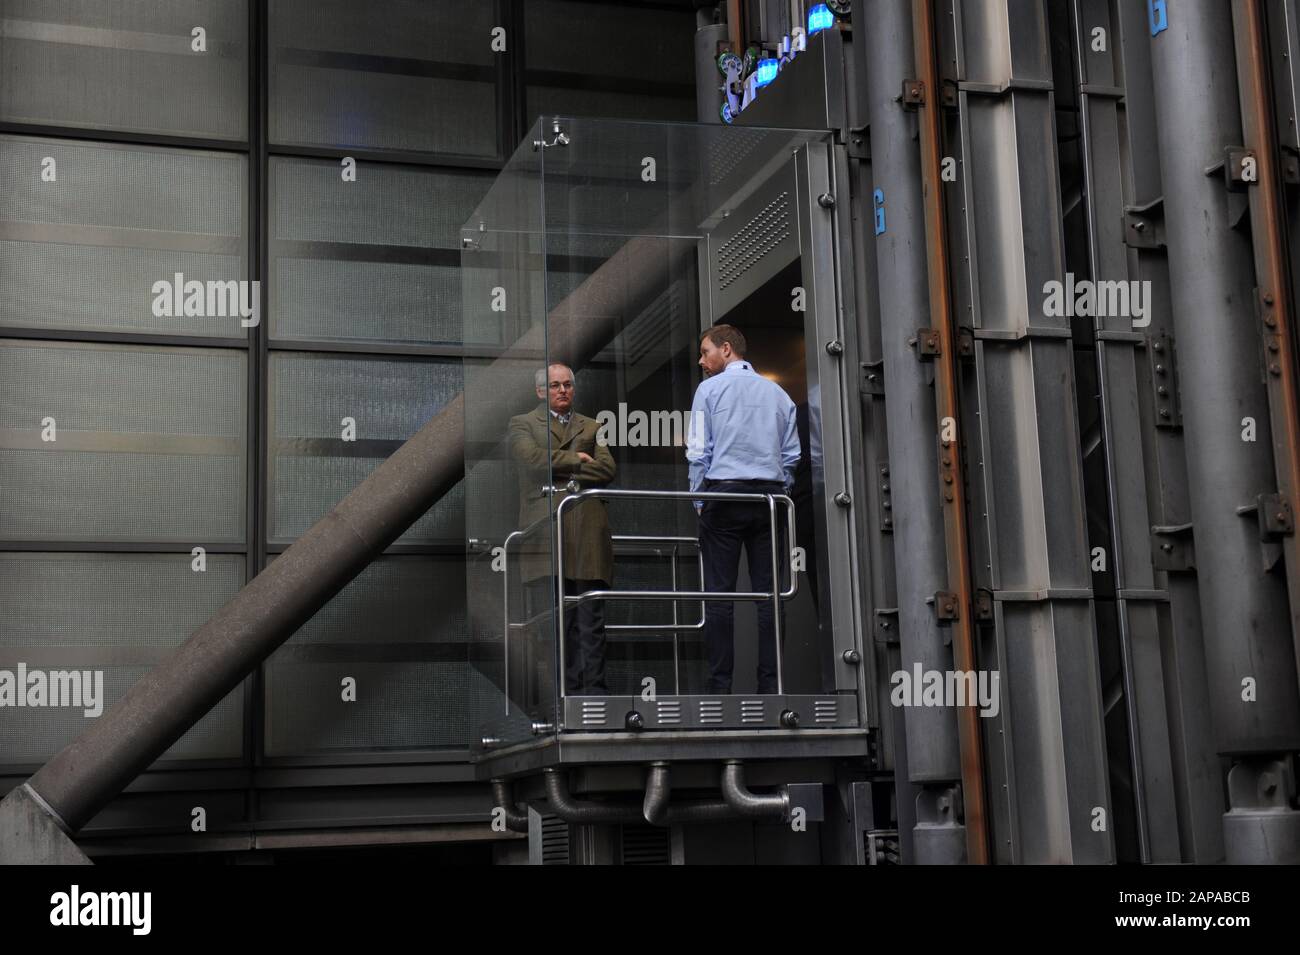 Les gens se trouvent dans les ascenseurs du Lloyd's of London Building de Lime Street, Londres, Angleterre Banque D'Images